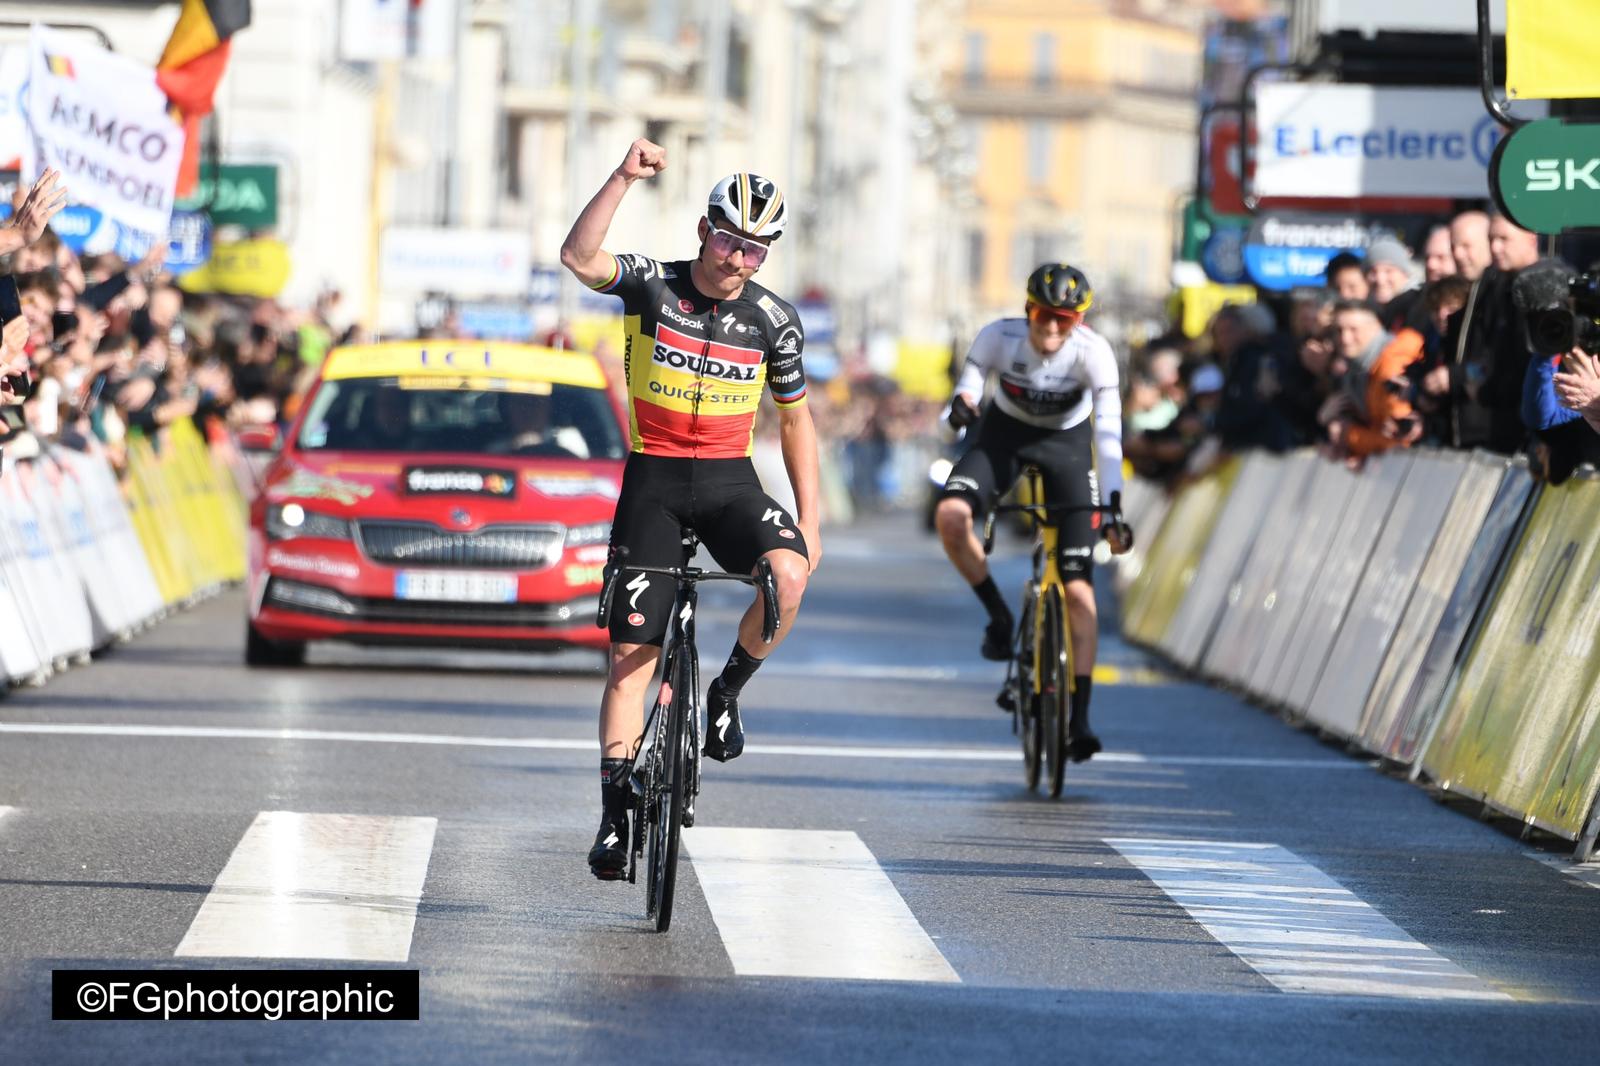 Classement de la 8ème étape de Paris-Nice, remportée par Remco Evenepoel.